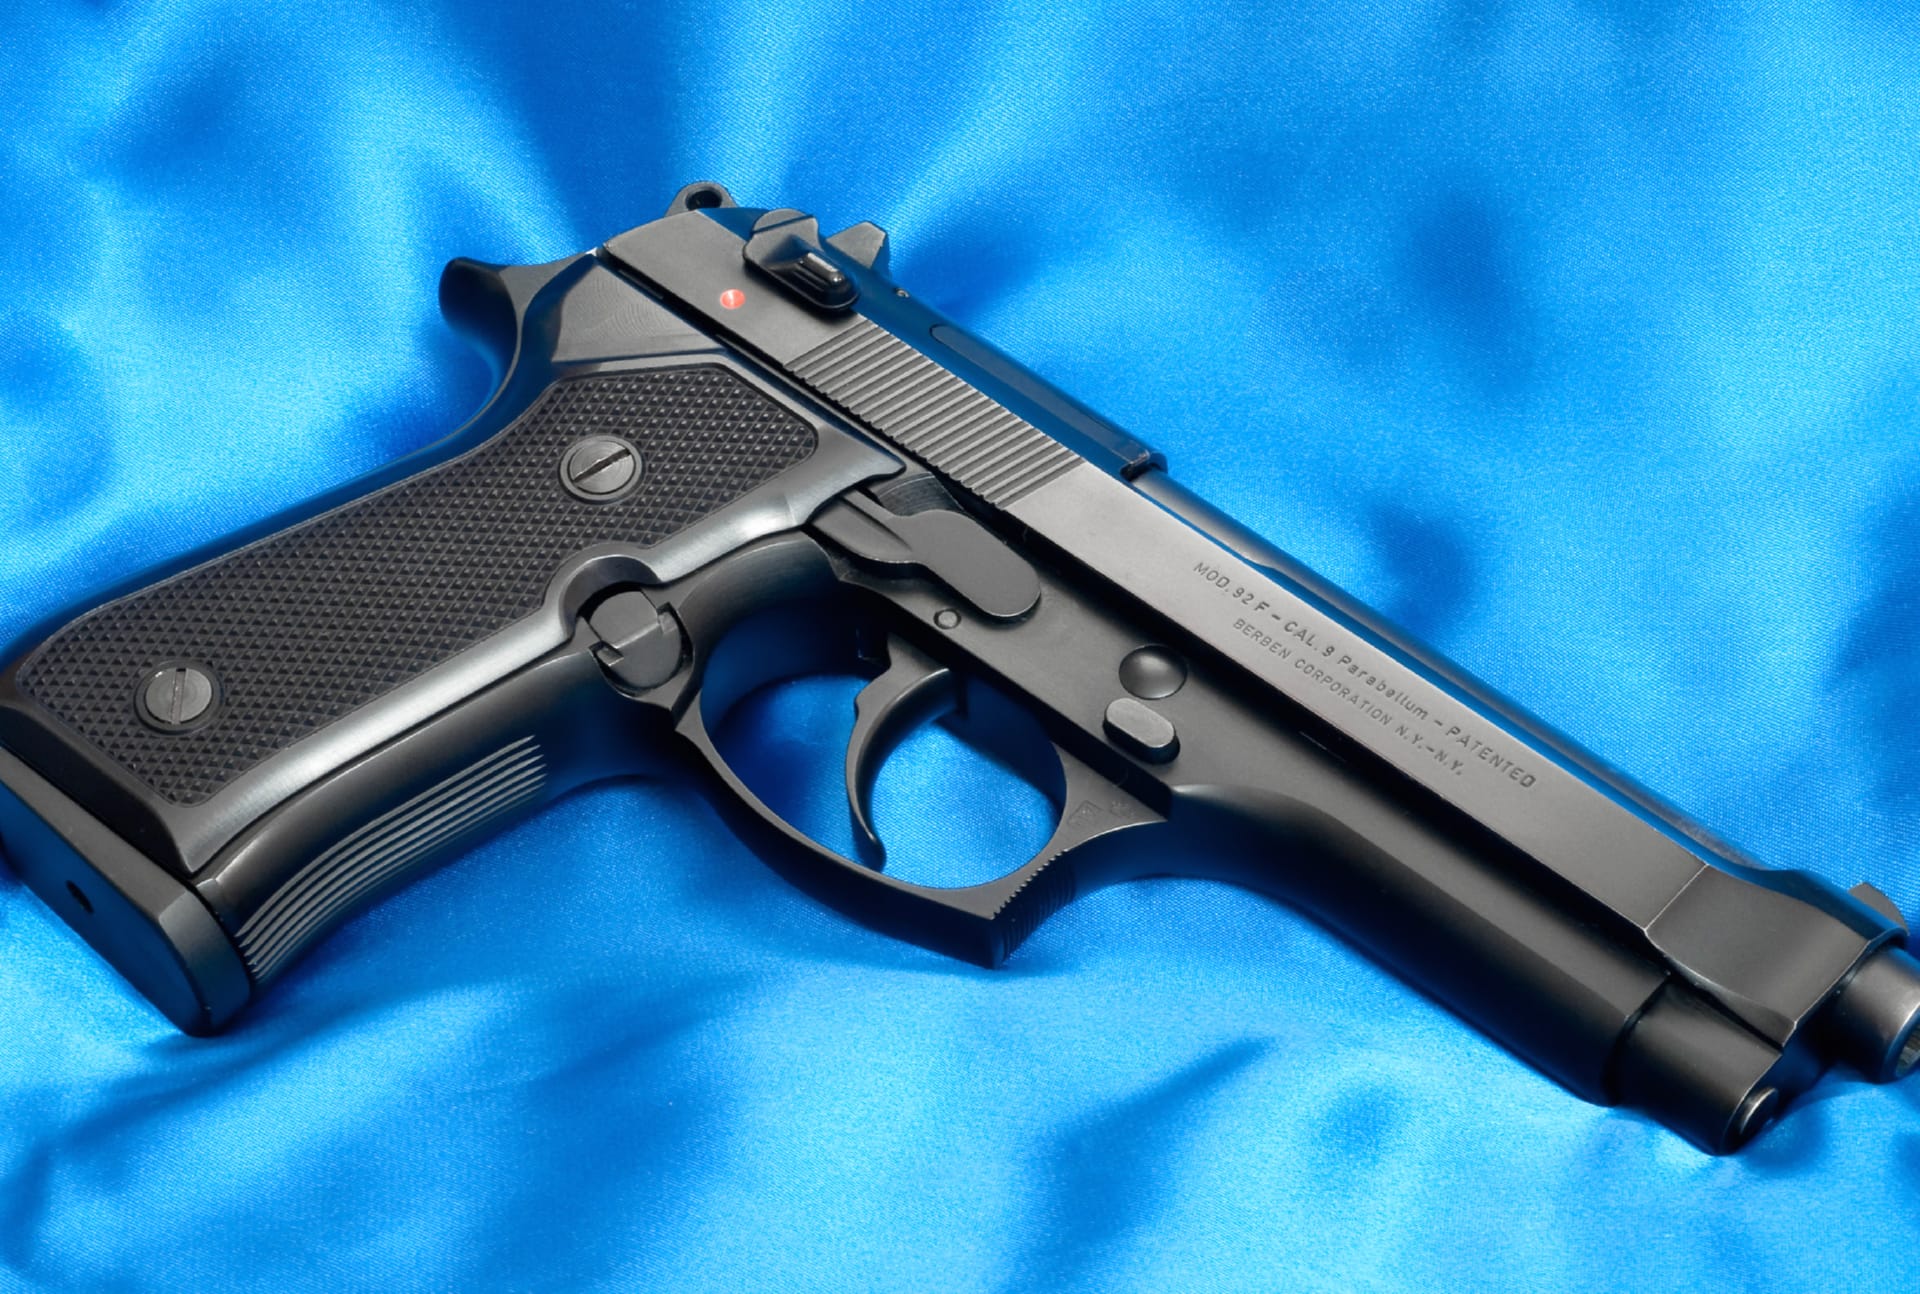 Beretta 92F Pistol at 1024 x 768 size wallpapers HD quality